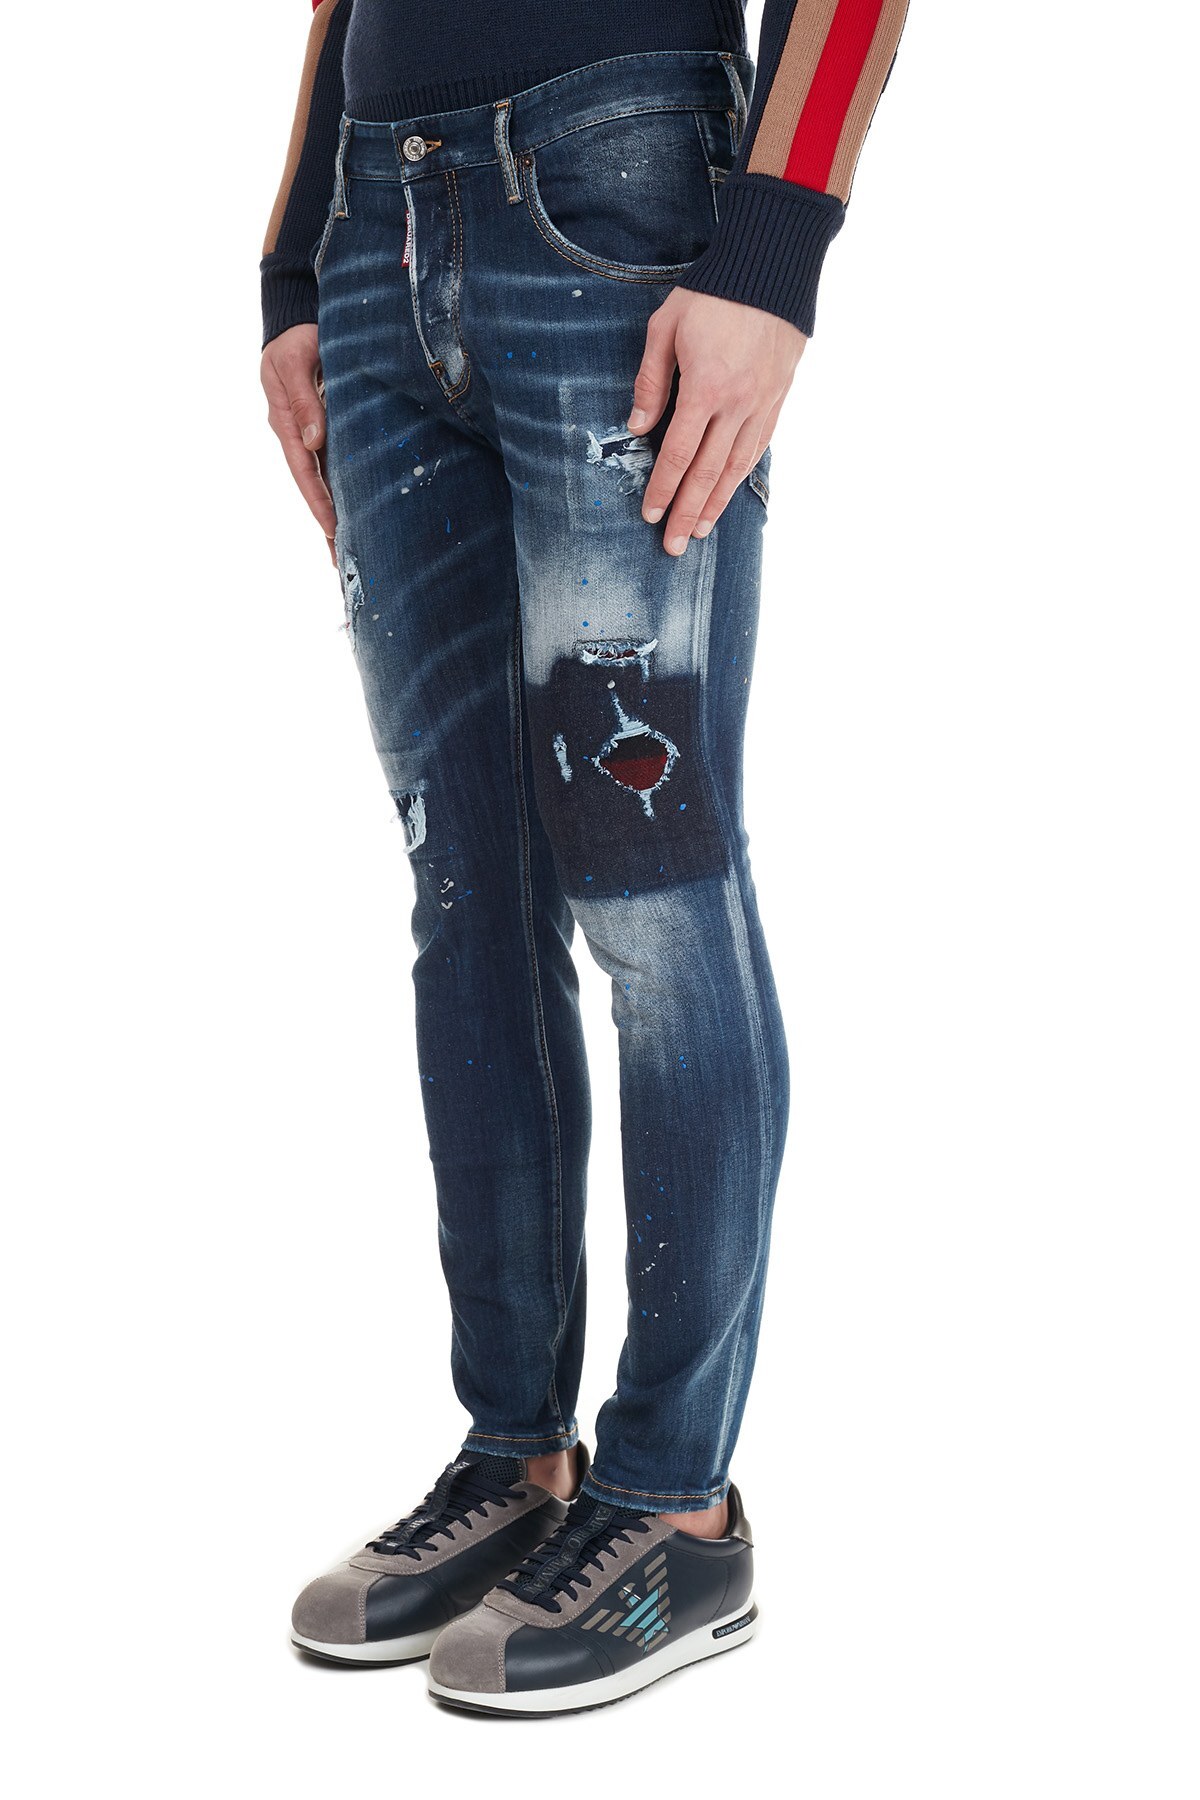 Dsquared2 Jeans Erkek Kot Pantolon S71LB0838 S30708 470 LACİVERT